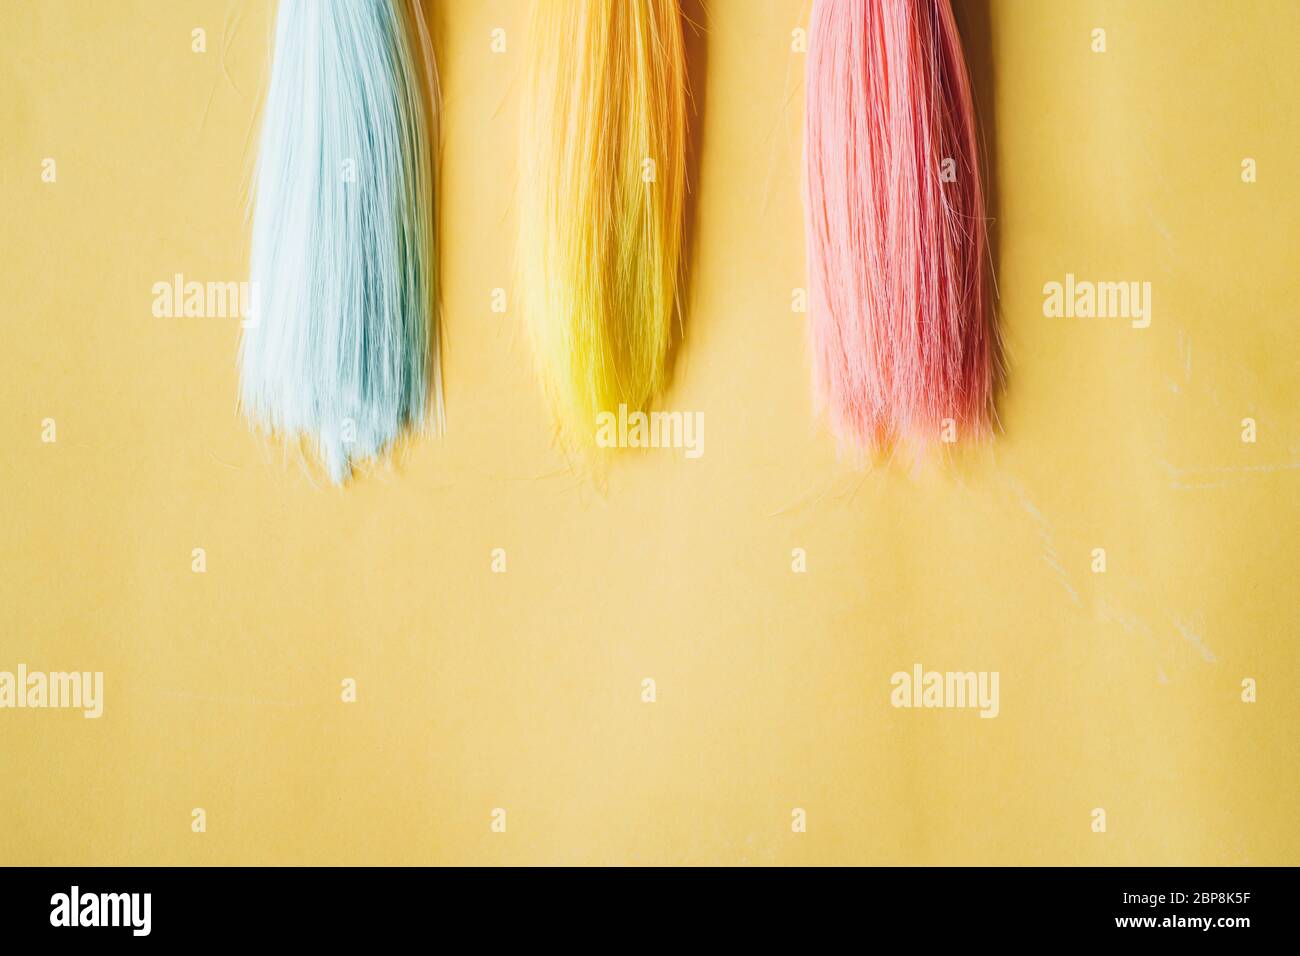 Mehrfarbige, gerade lange Haare, Perücken für handgefertigte Puppen auf  gelbem Hintergrund. Handarbeit, Hobby, Freizeitkonzept. Draufsicht. Farbige  Haarsträhnen Stockfotografie - Alamy